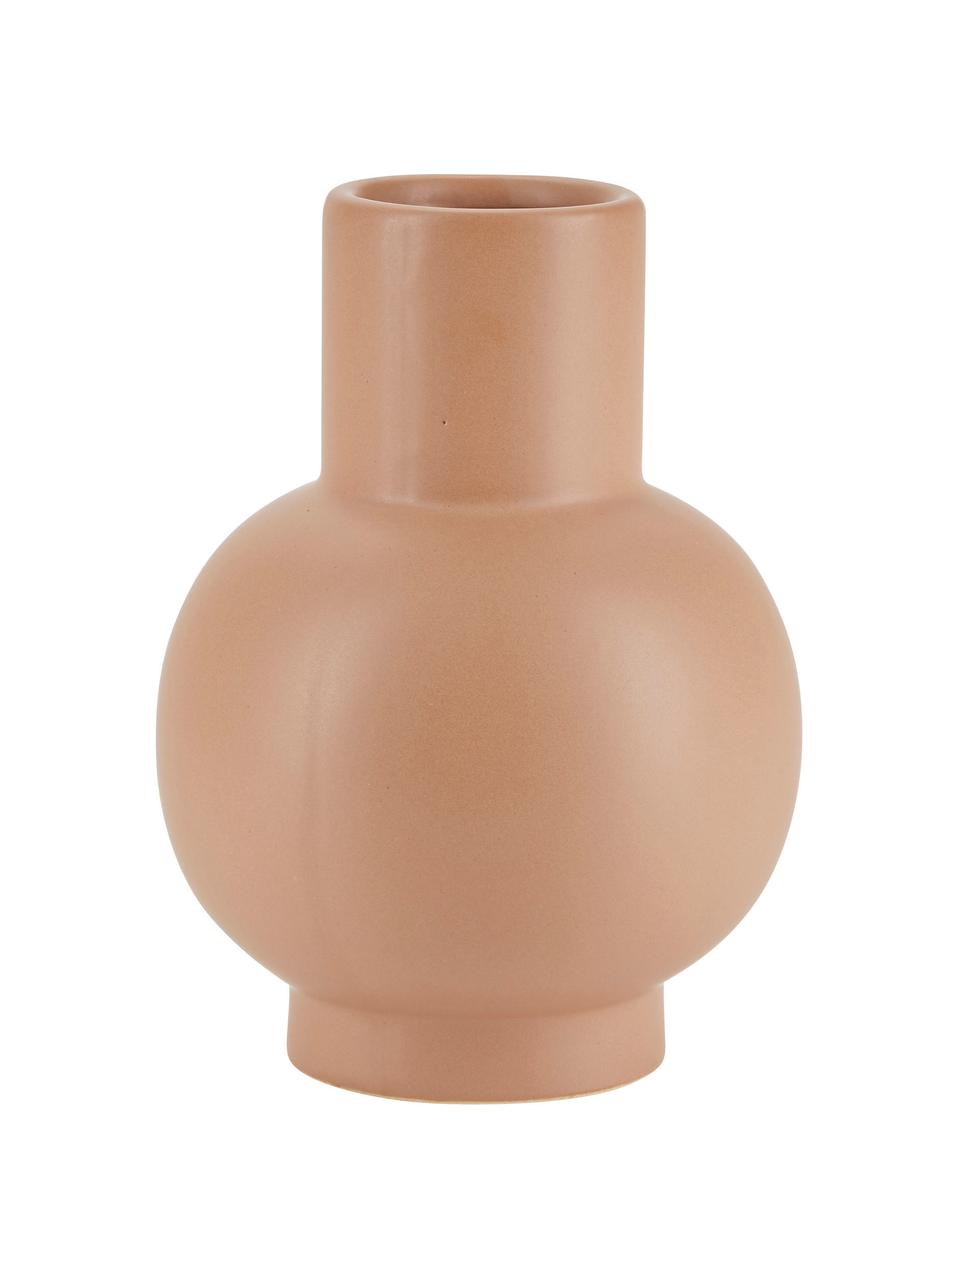 Keramik-Vase Bobble in Terrakotta, Keramik, Terrakotta, Ø 14 x H 20 cm